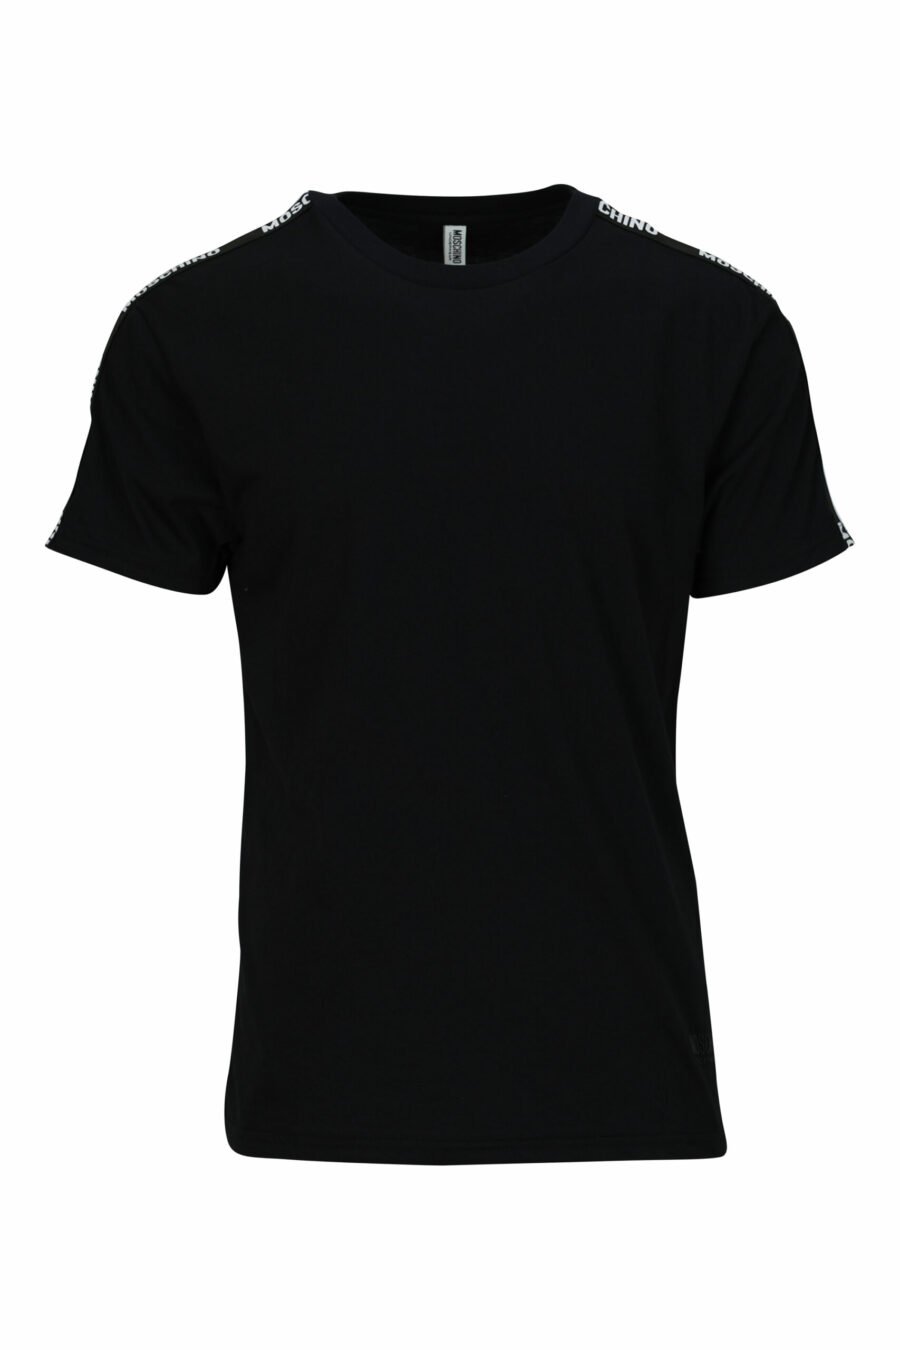 Schwarzes T-Shirt mit Mini-Logo auf Band - 667113602967 skaliert